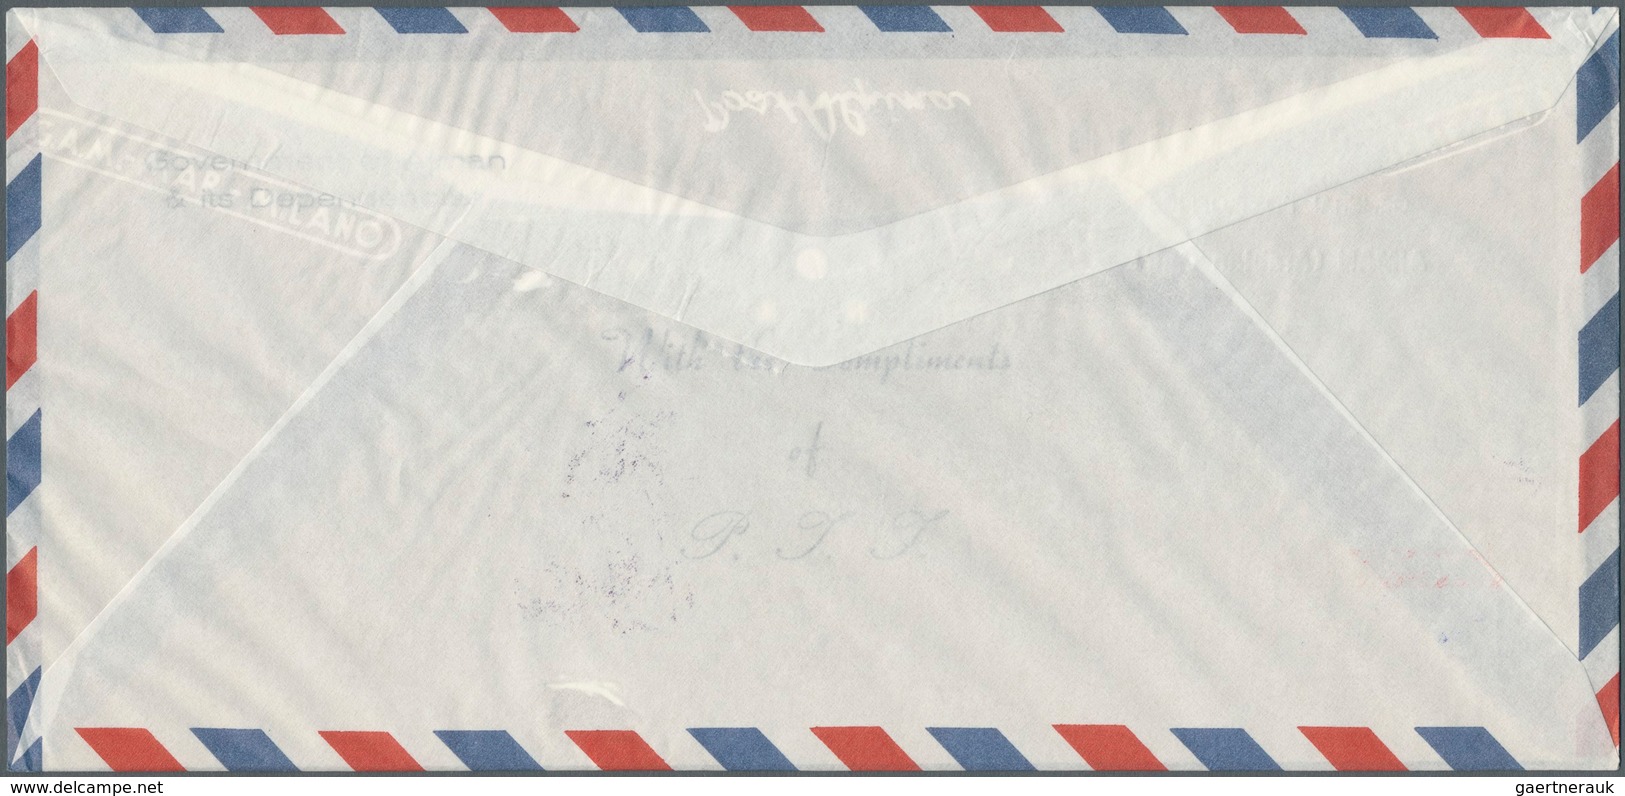 Thematik: Raumfahrt / astronautics: 1969, SPACE (Apollo 9+10, Gagarin, White), four souvenir sheets